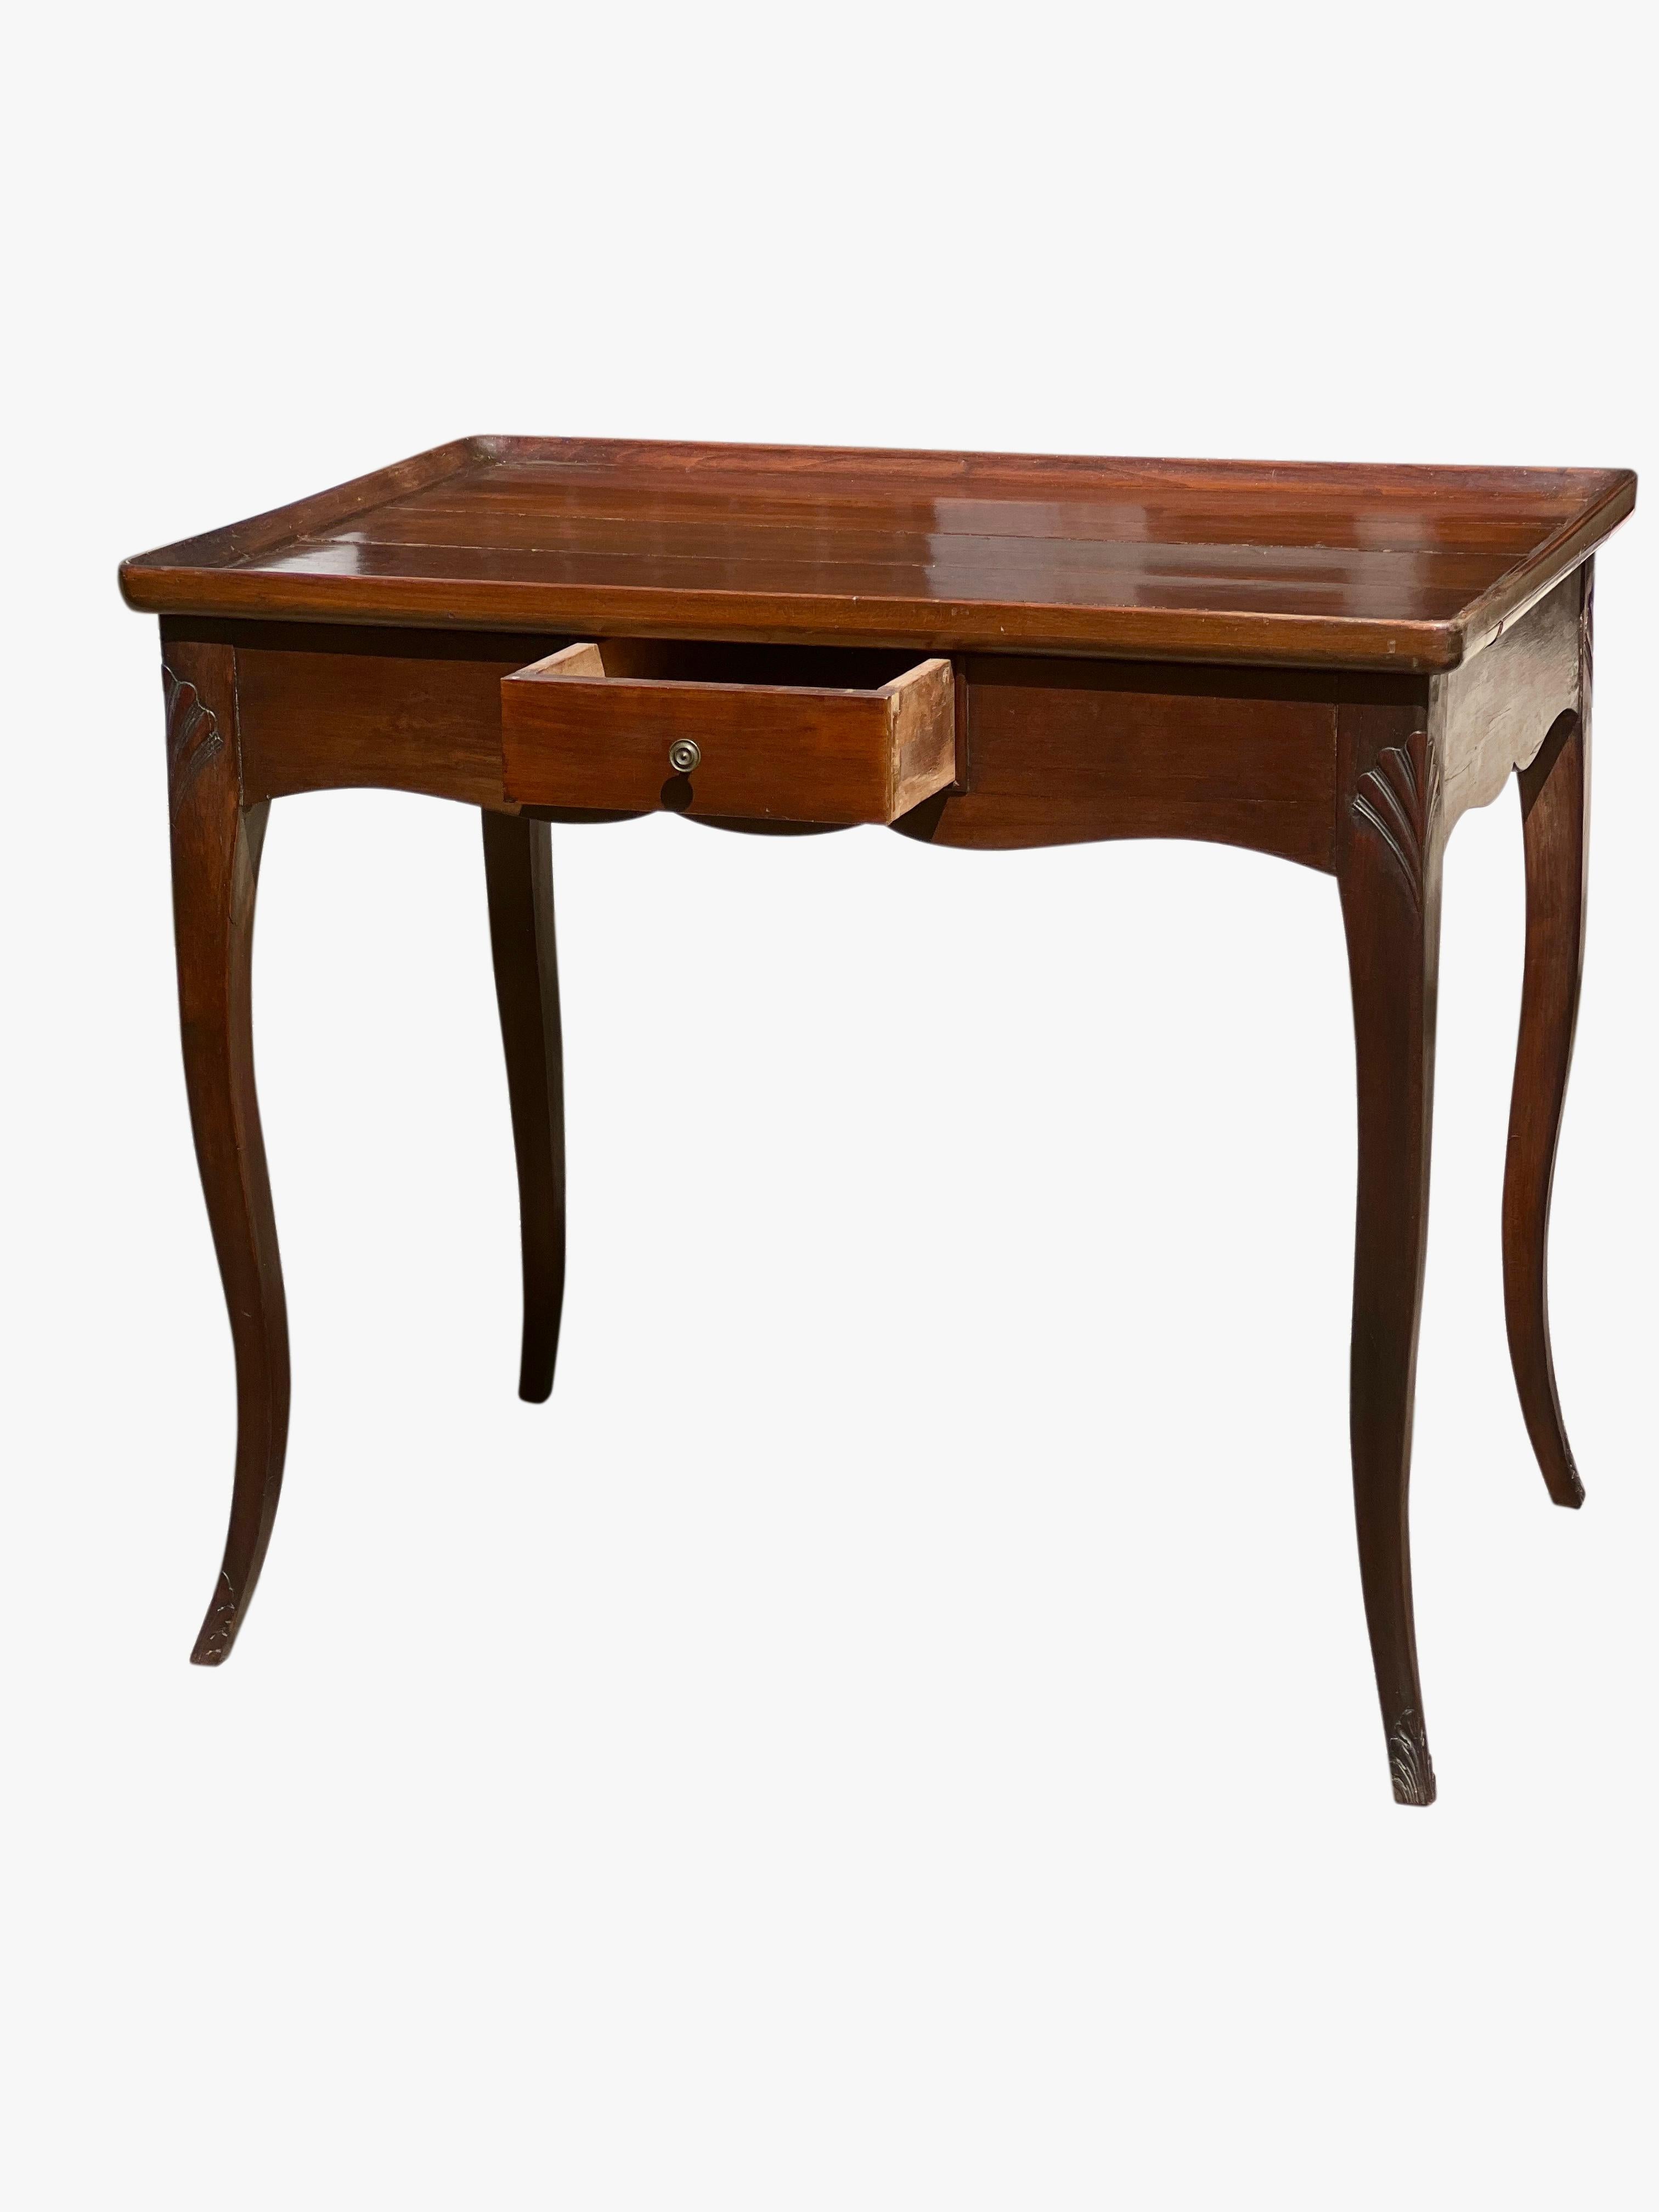 Antike Französisch Provincial Mahagoni-Stil Louis XV Seite oder  Teetisch, um 1900.

Dieser schöne Tisch wurde sorgfältig gepflegt und hat eine schöne Patina mit einem herrlichen, satinartigen Glanz. Die schlanken, sich sanft verjüngenden